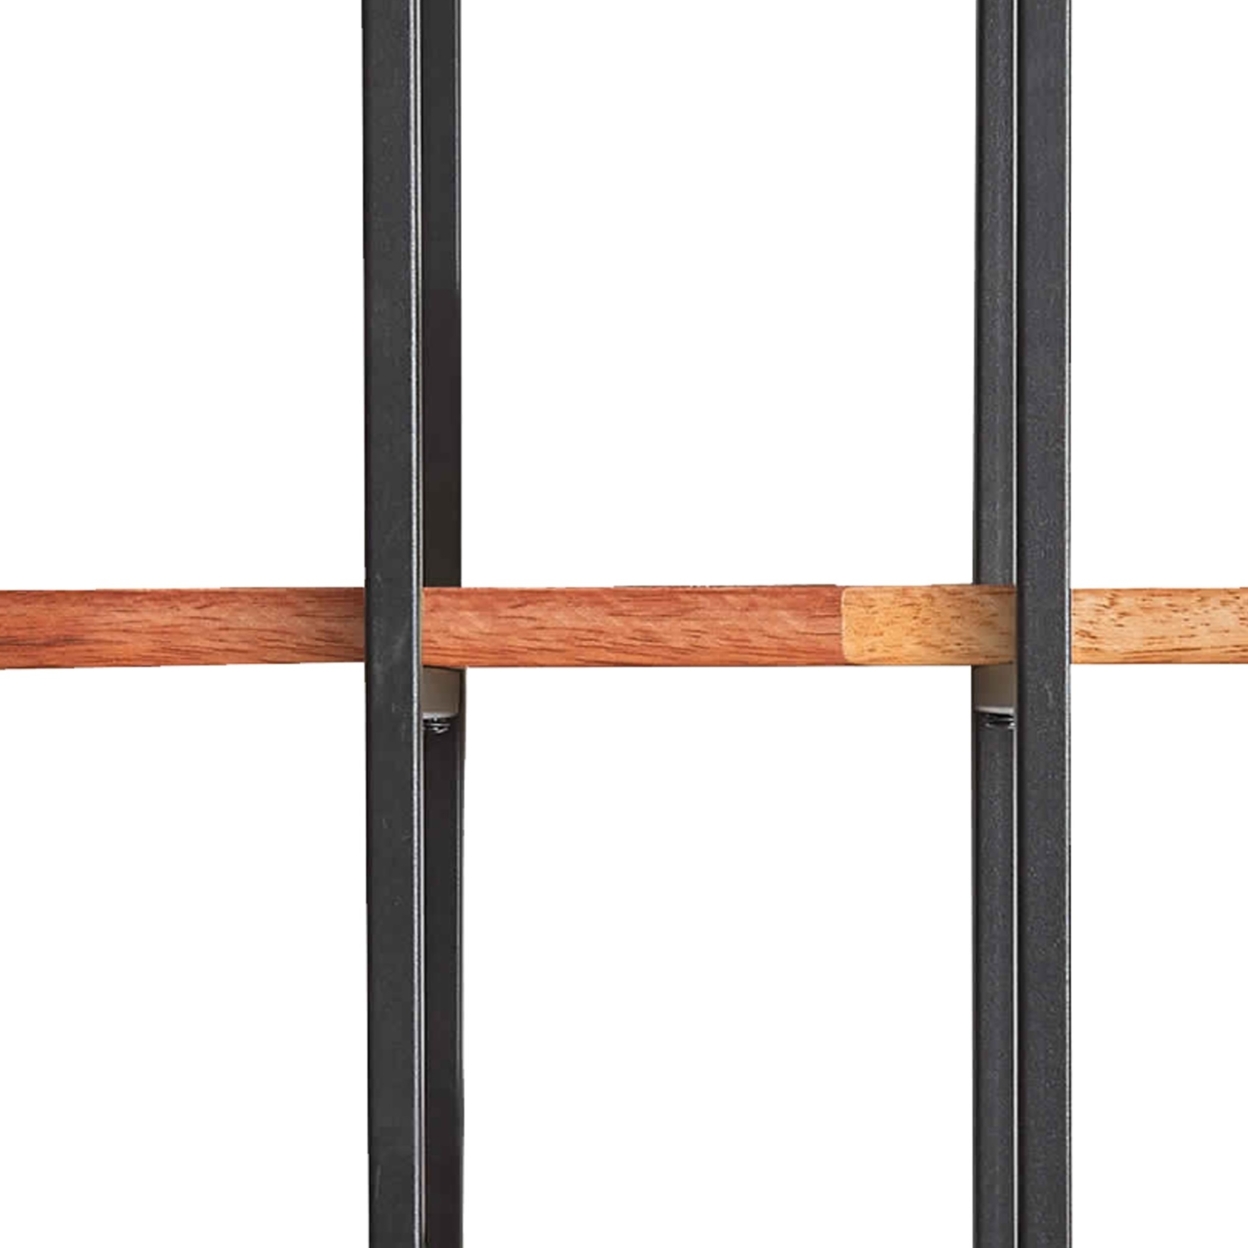 3 Tier Wood And Metal Frame Wall Display With Tubular Frame, Brown And Black- Saltoro Sherpi